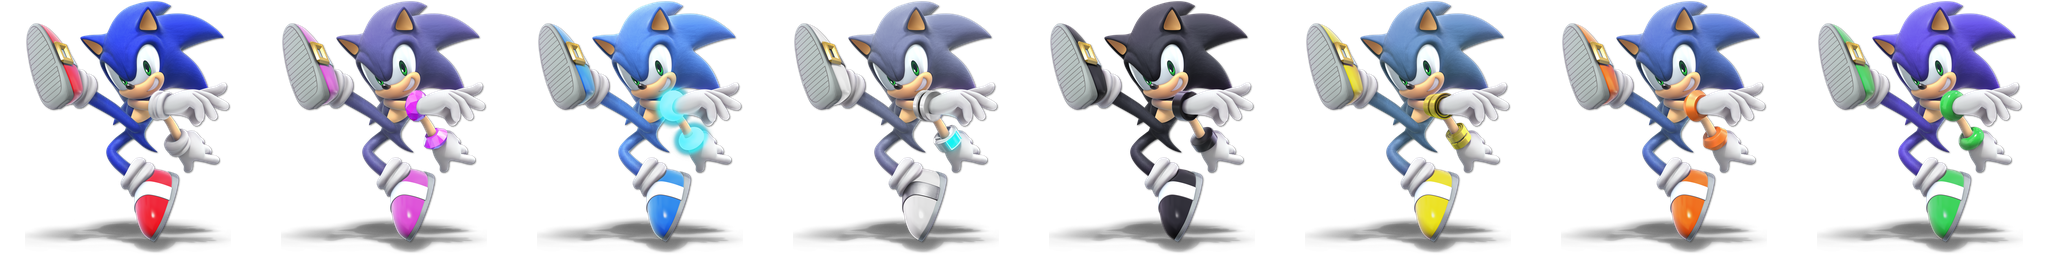 Sonic (SSBU) - SmashWiki, the Super Smash Bros. wiki